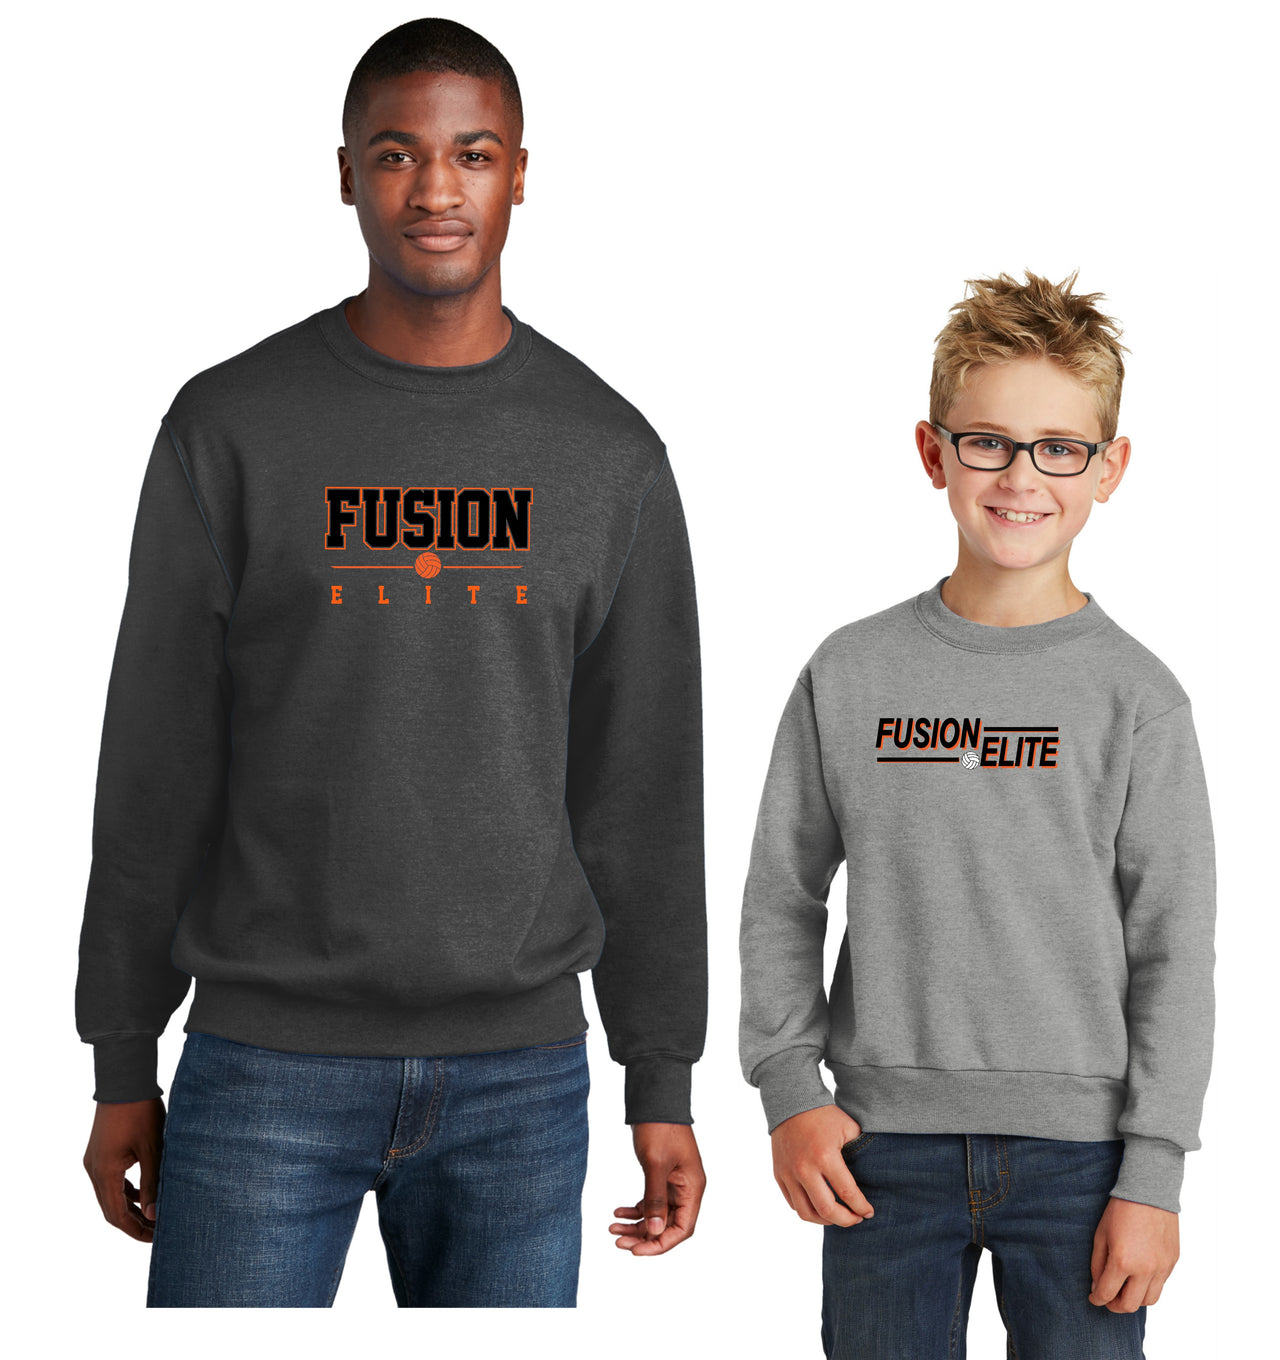 Adult & Youth - Unisex Crewneck Sweatshirt - (Fusion Elite)